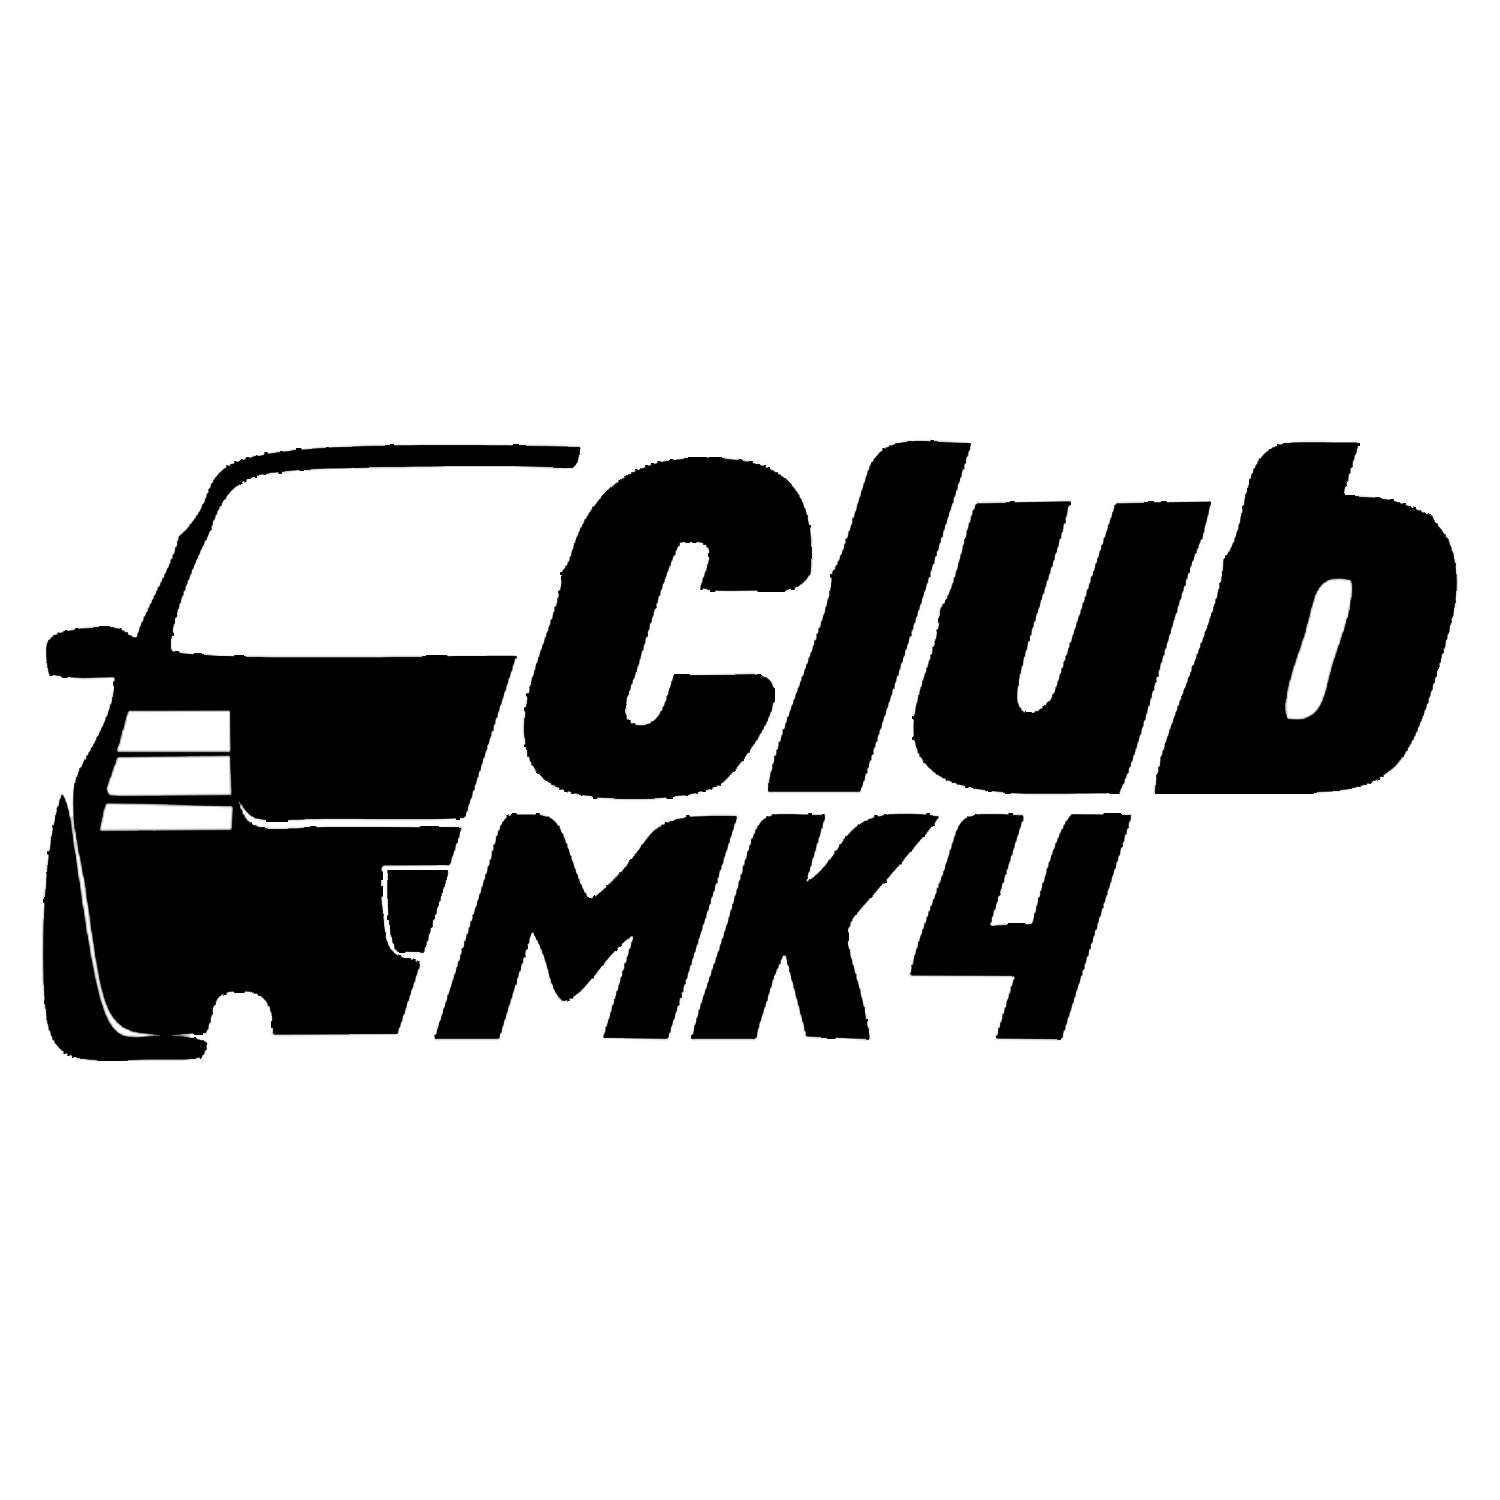 Sticker MK4 Club